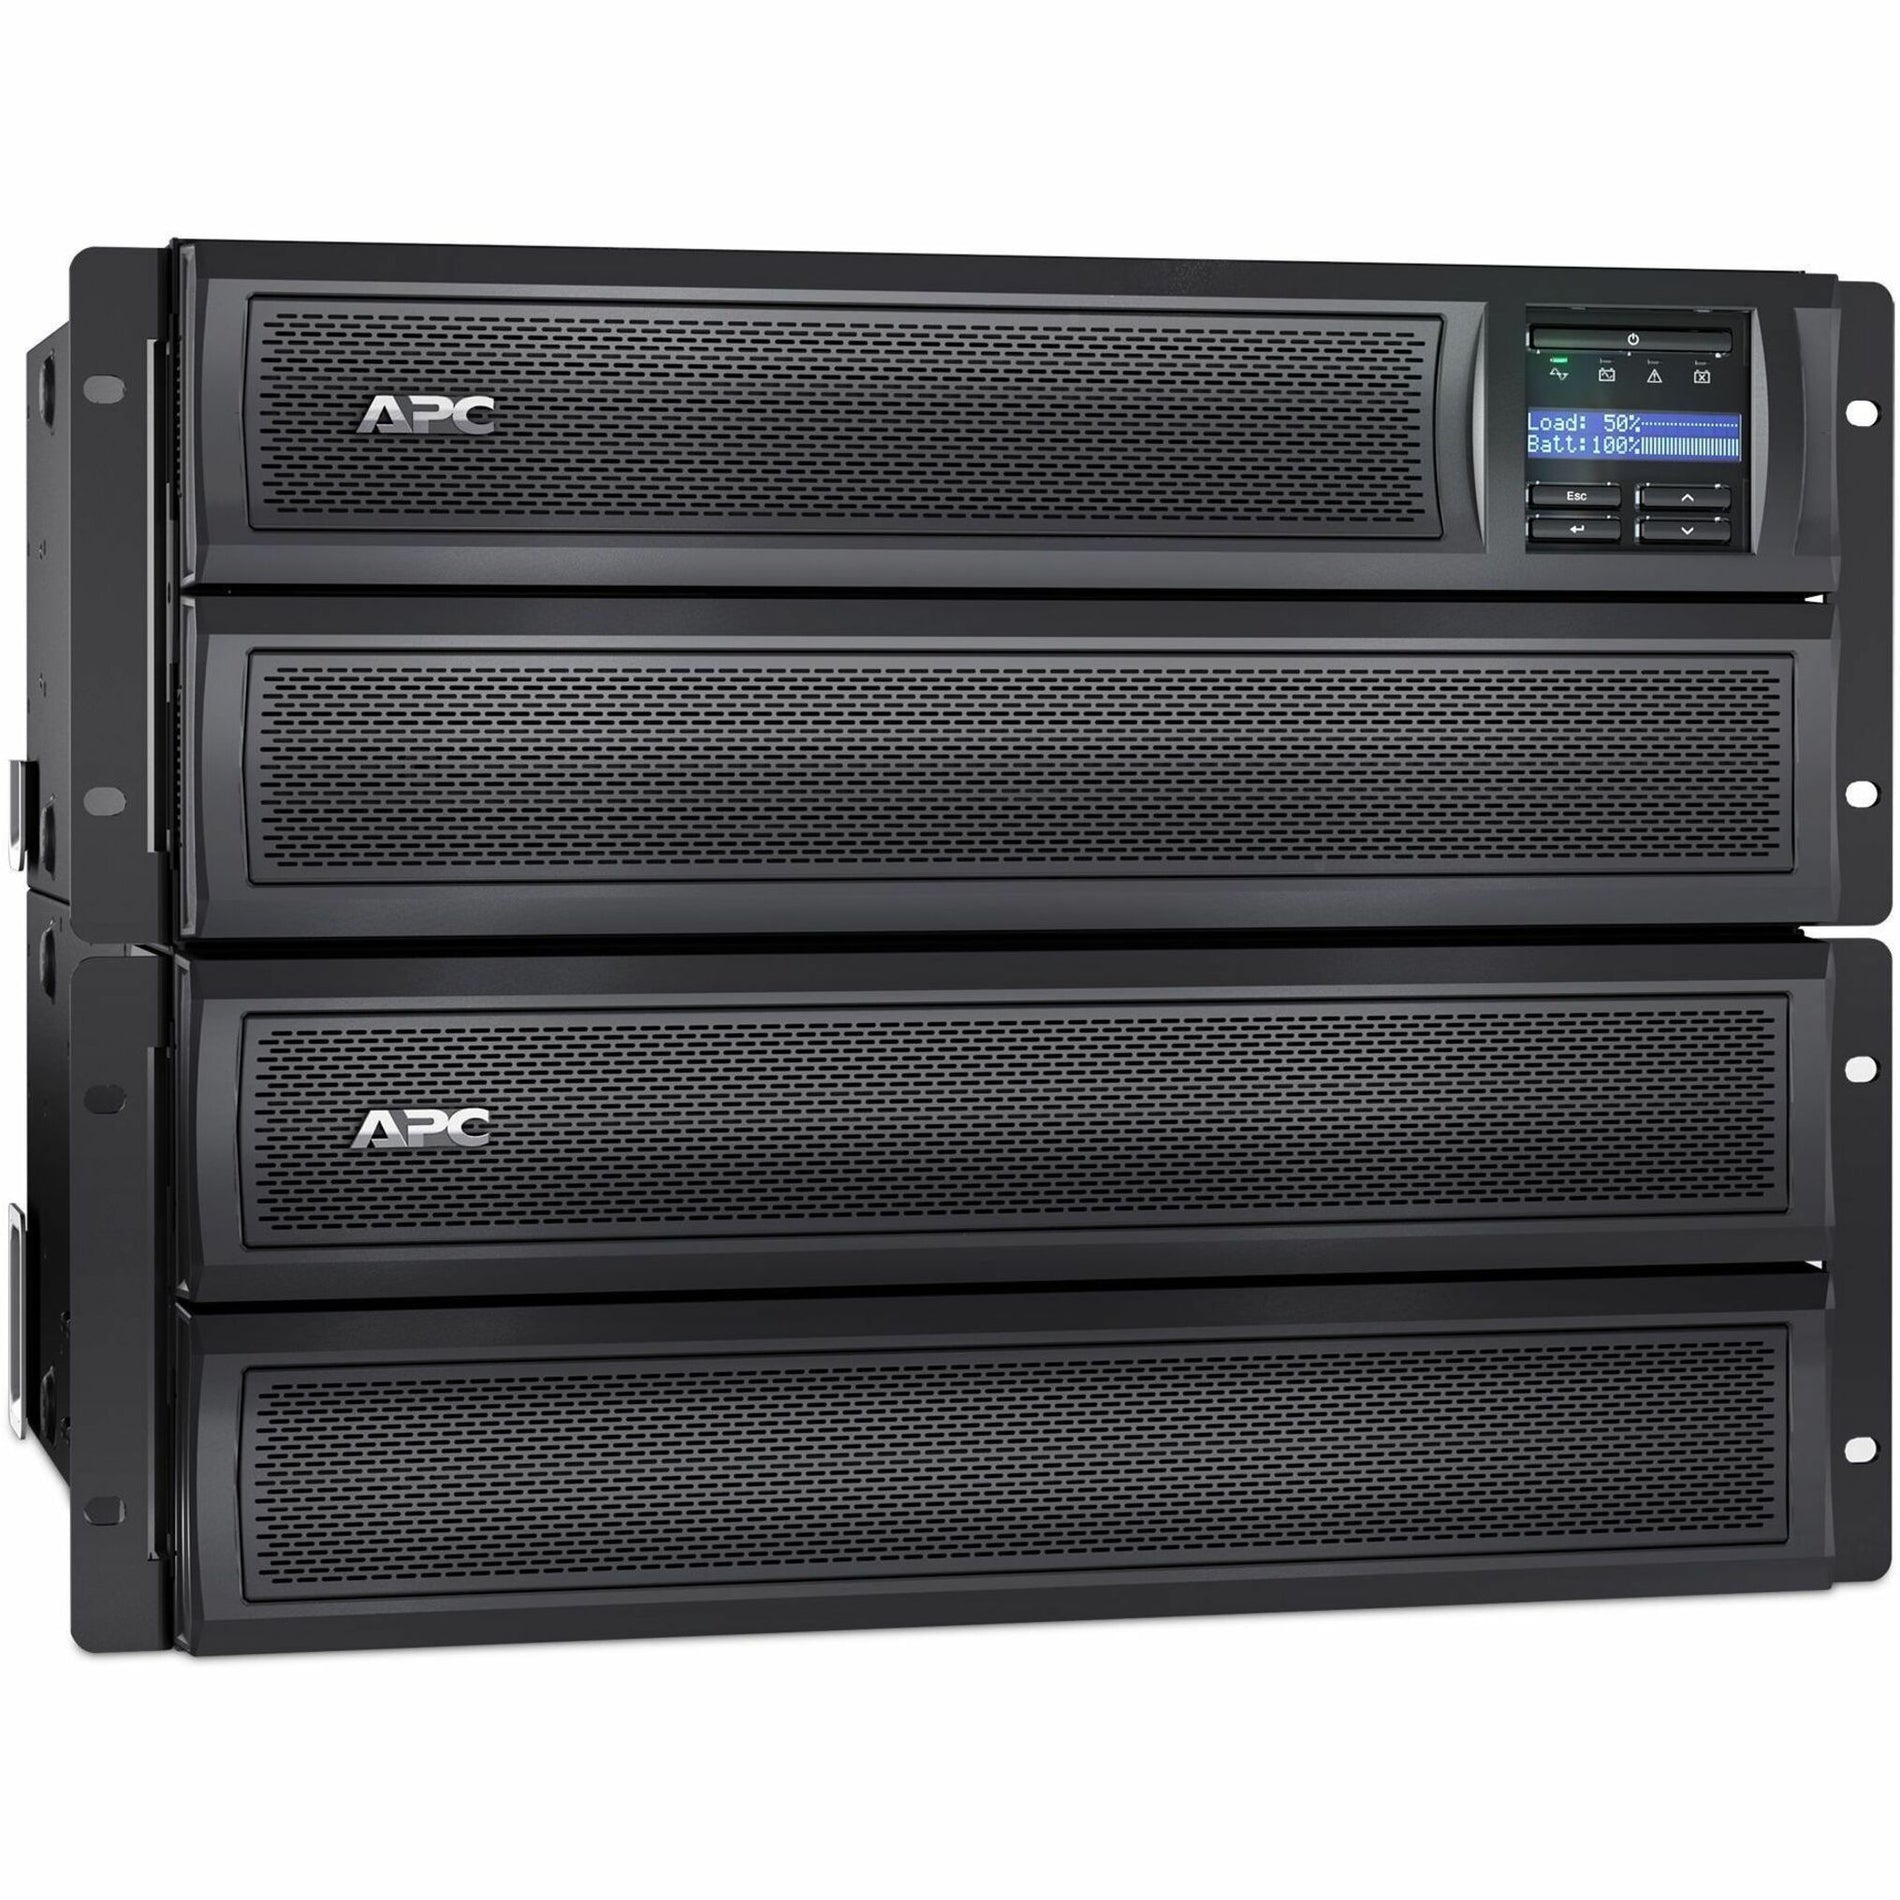 حماية الطاقة APC Smart-UPS X 3000VA قصيرة العمق البرج / قابلة للتحويل رف LCD 208V (SMX3000HVT) - APC